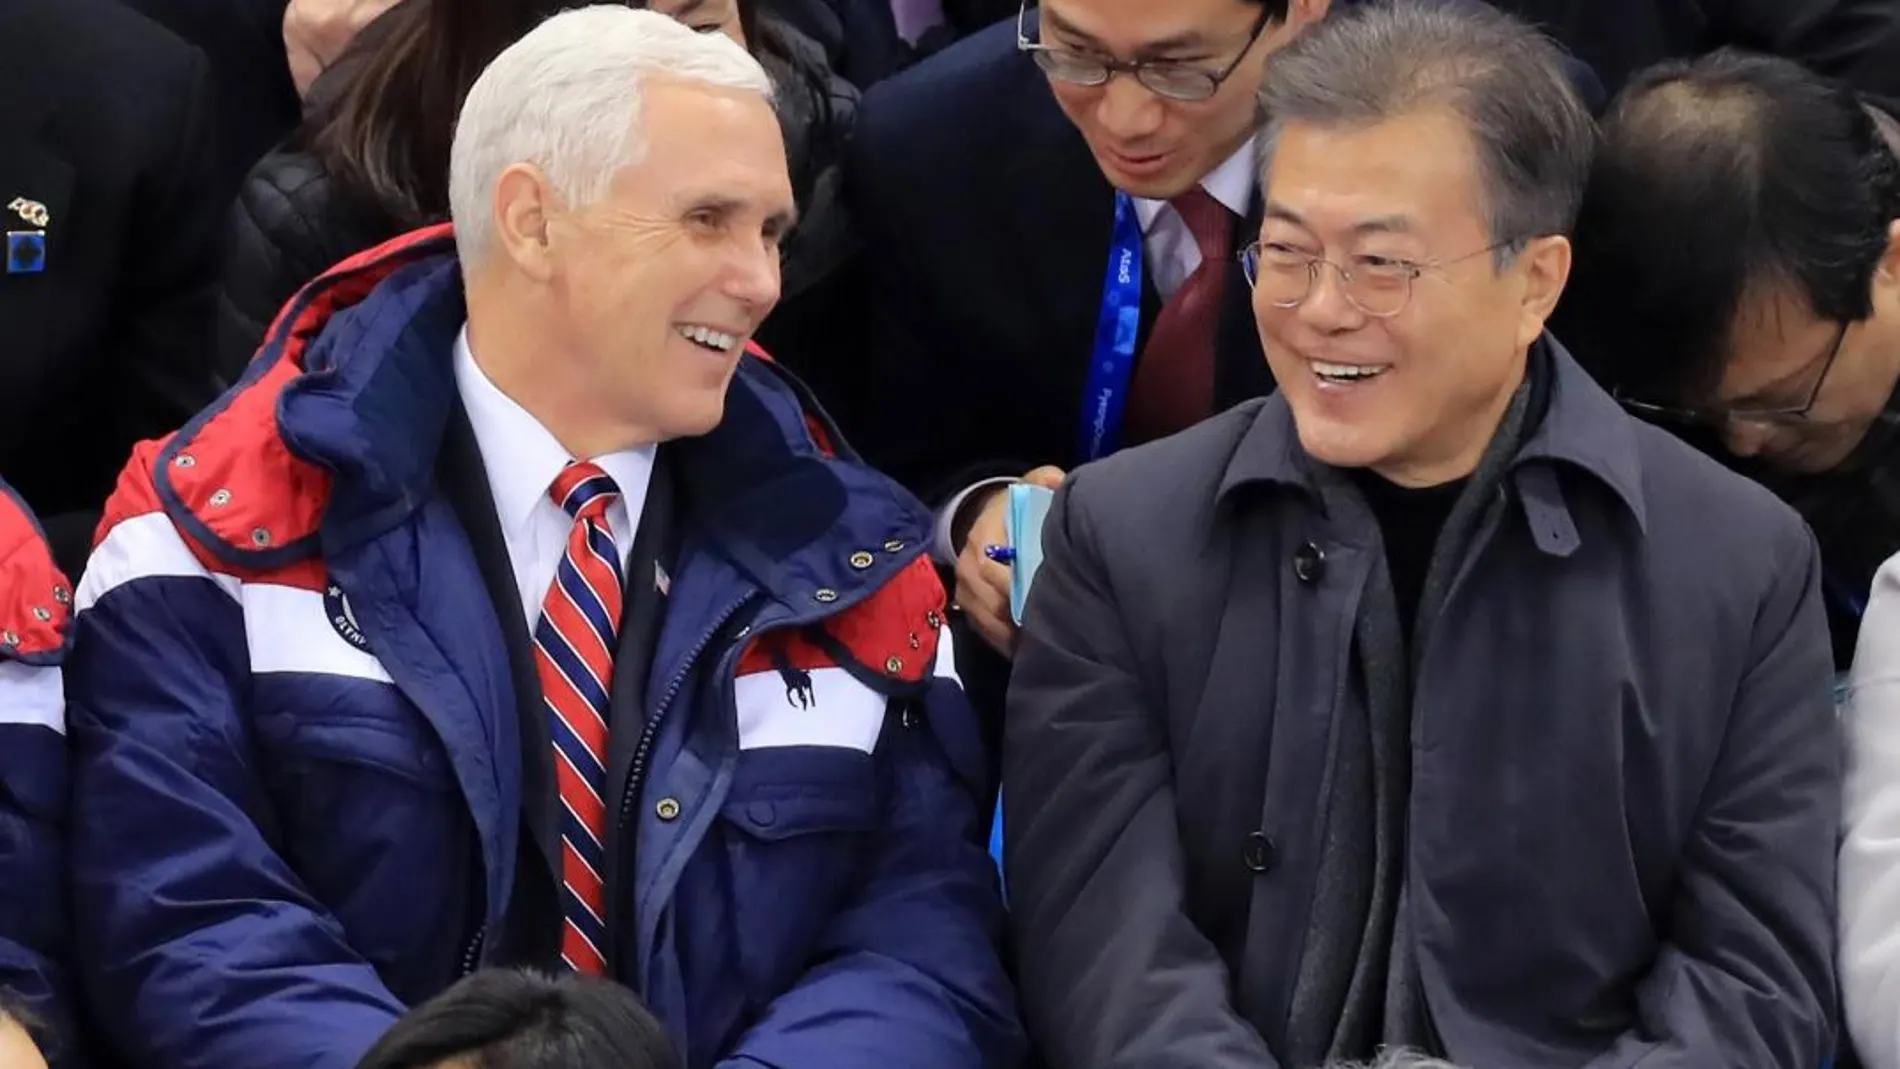 El vicepresidente de EE.UU., Mike Pence conversa con el presidente del Corea del Sur, Moon Jae-in el pasado día 10